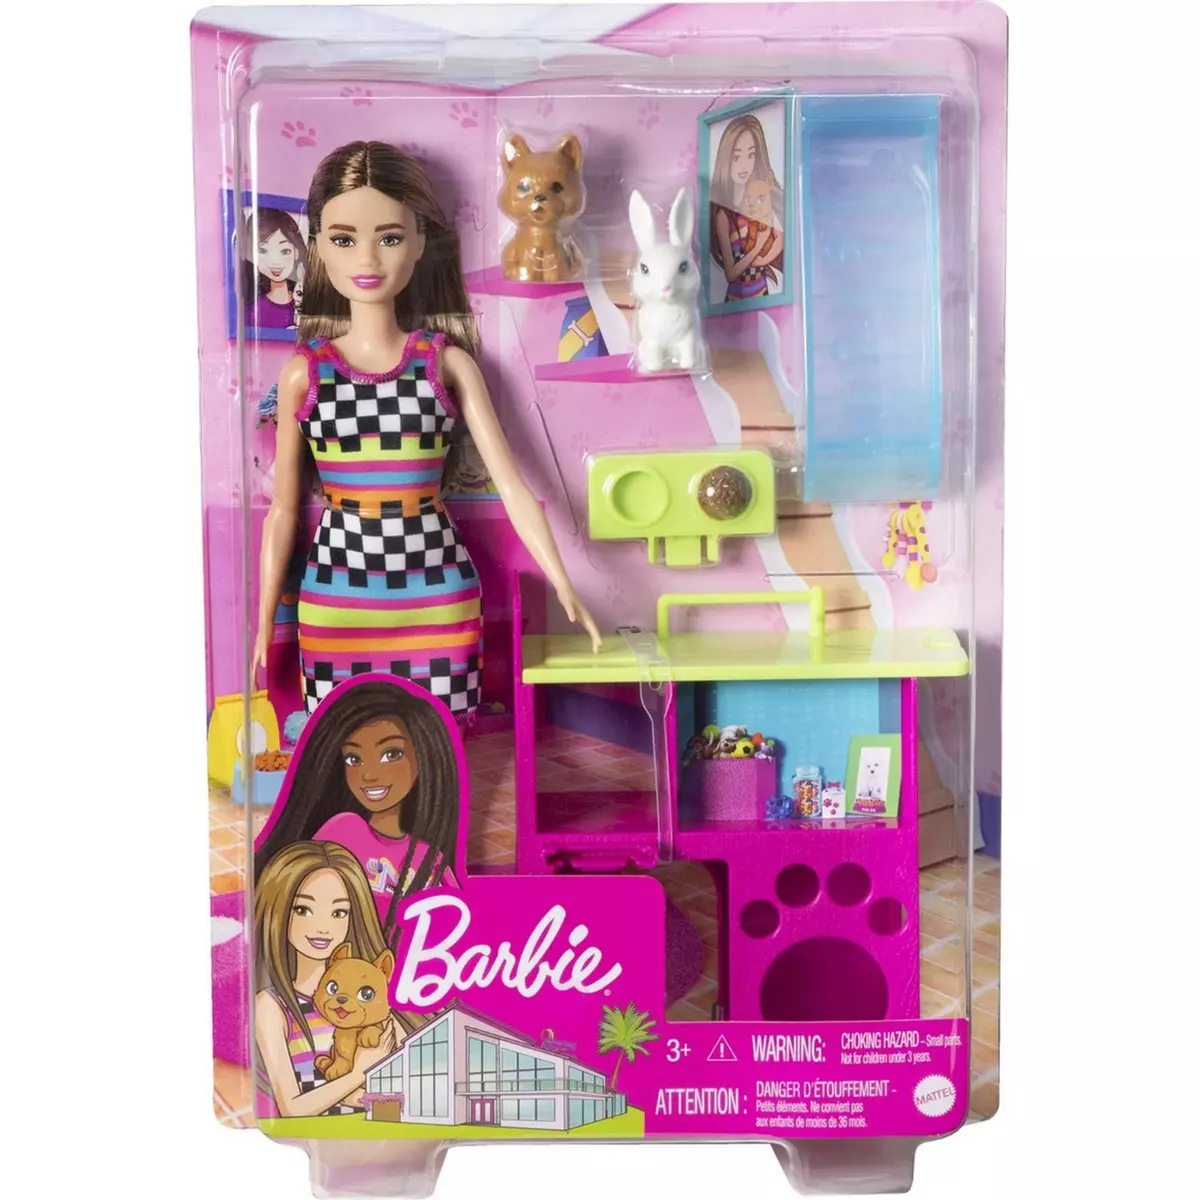 MATTEL Barbie maison de rêve pas cher 